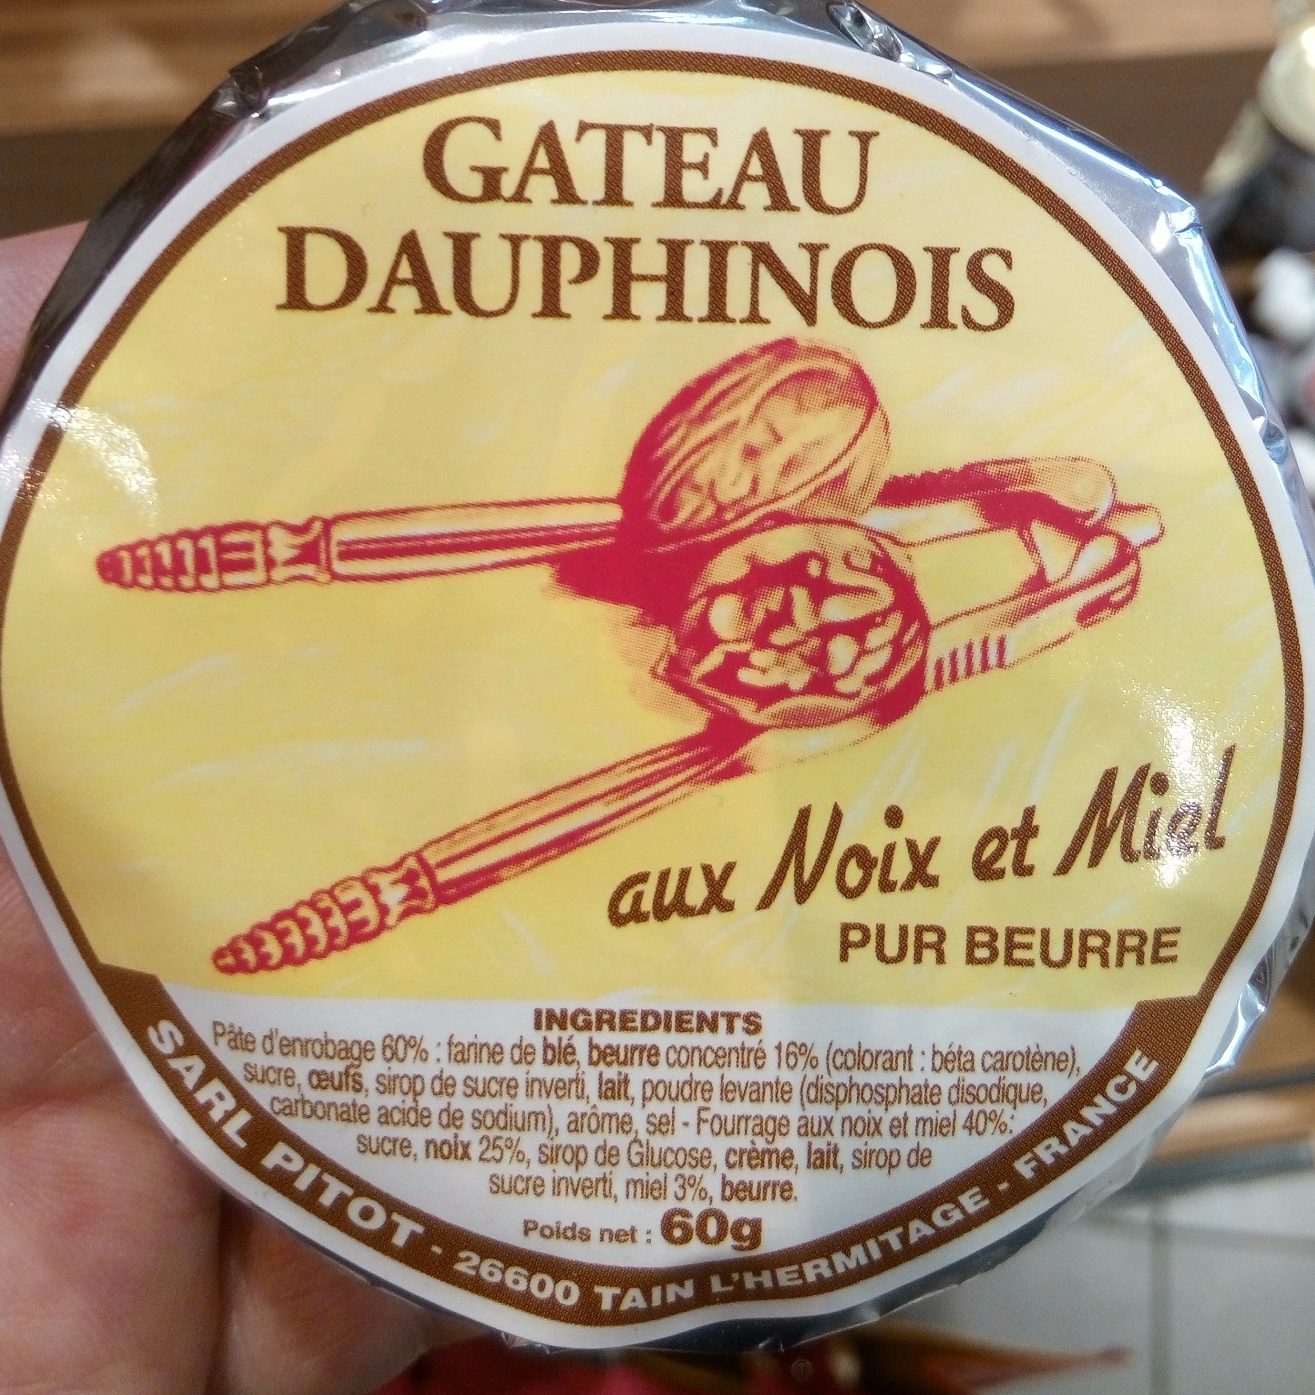 Gâteau dauphinois aux Noix et Miel - Product - fr